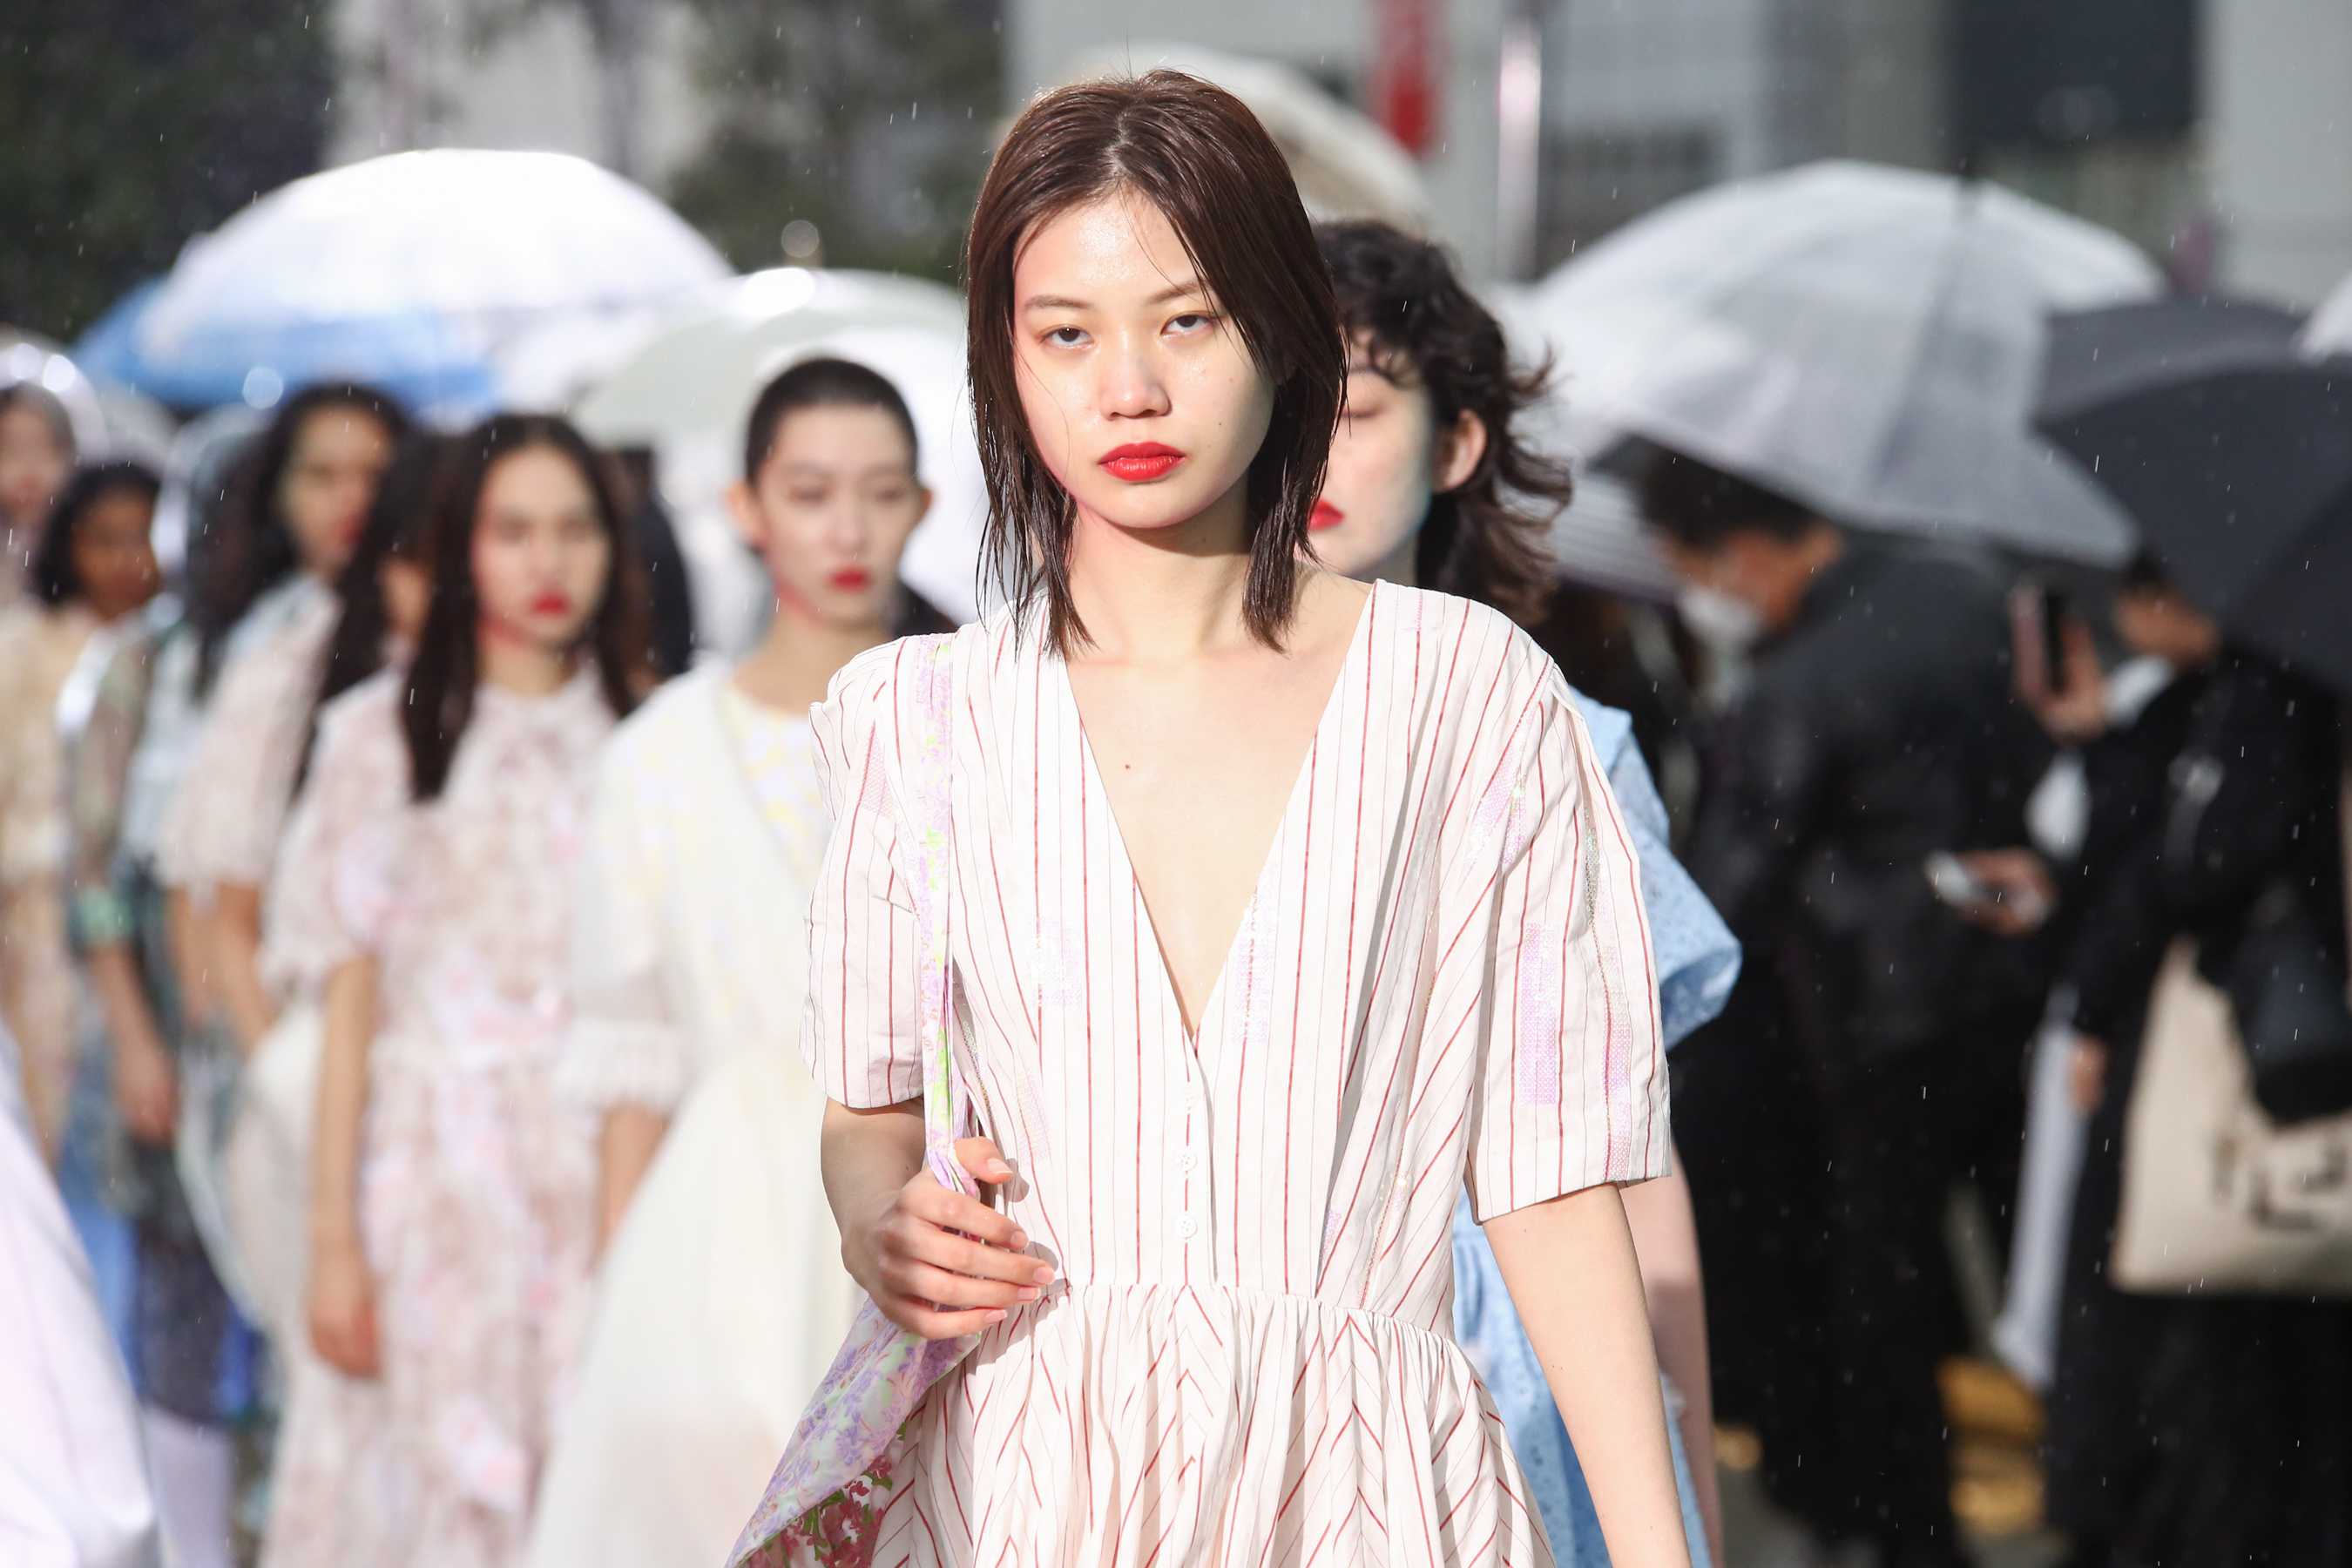 Mikio Sakabe Spring 2021 Fashion Show 